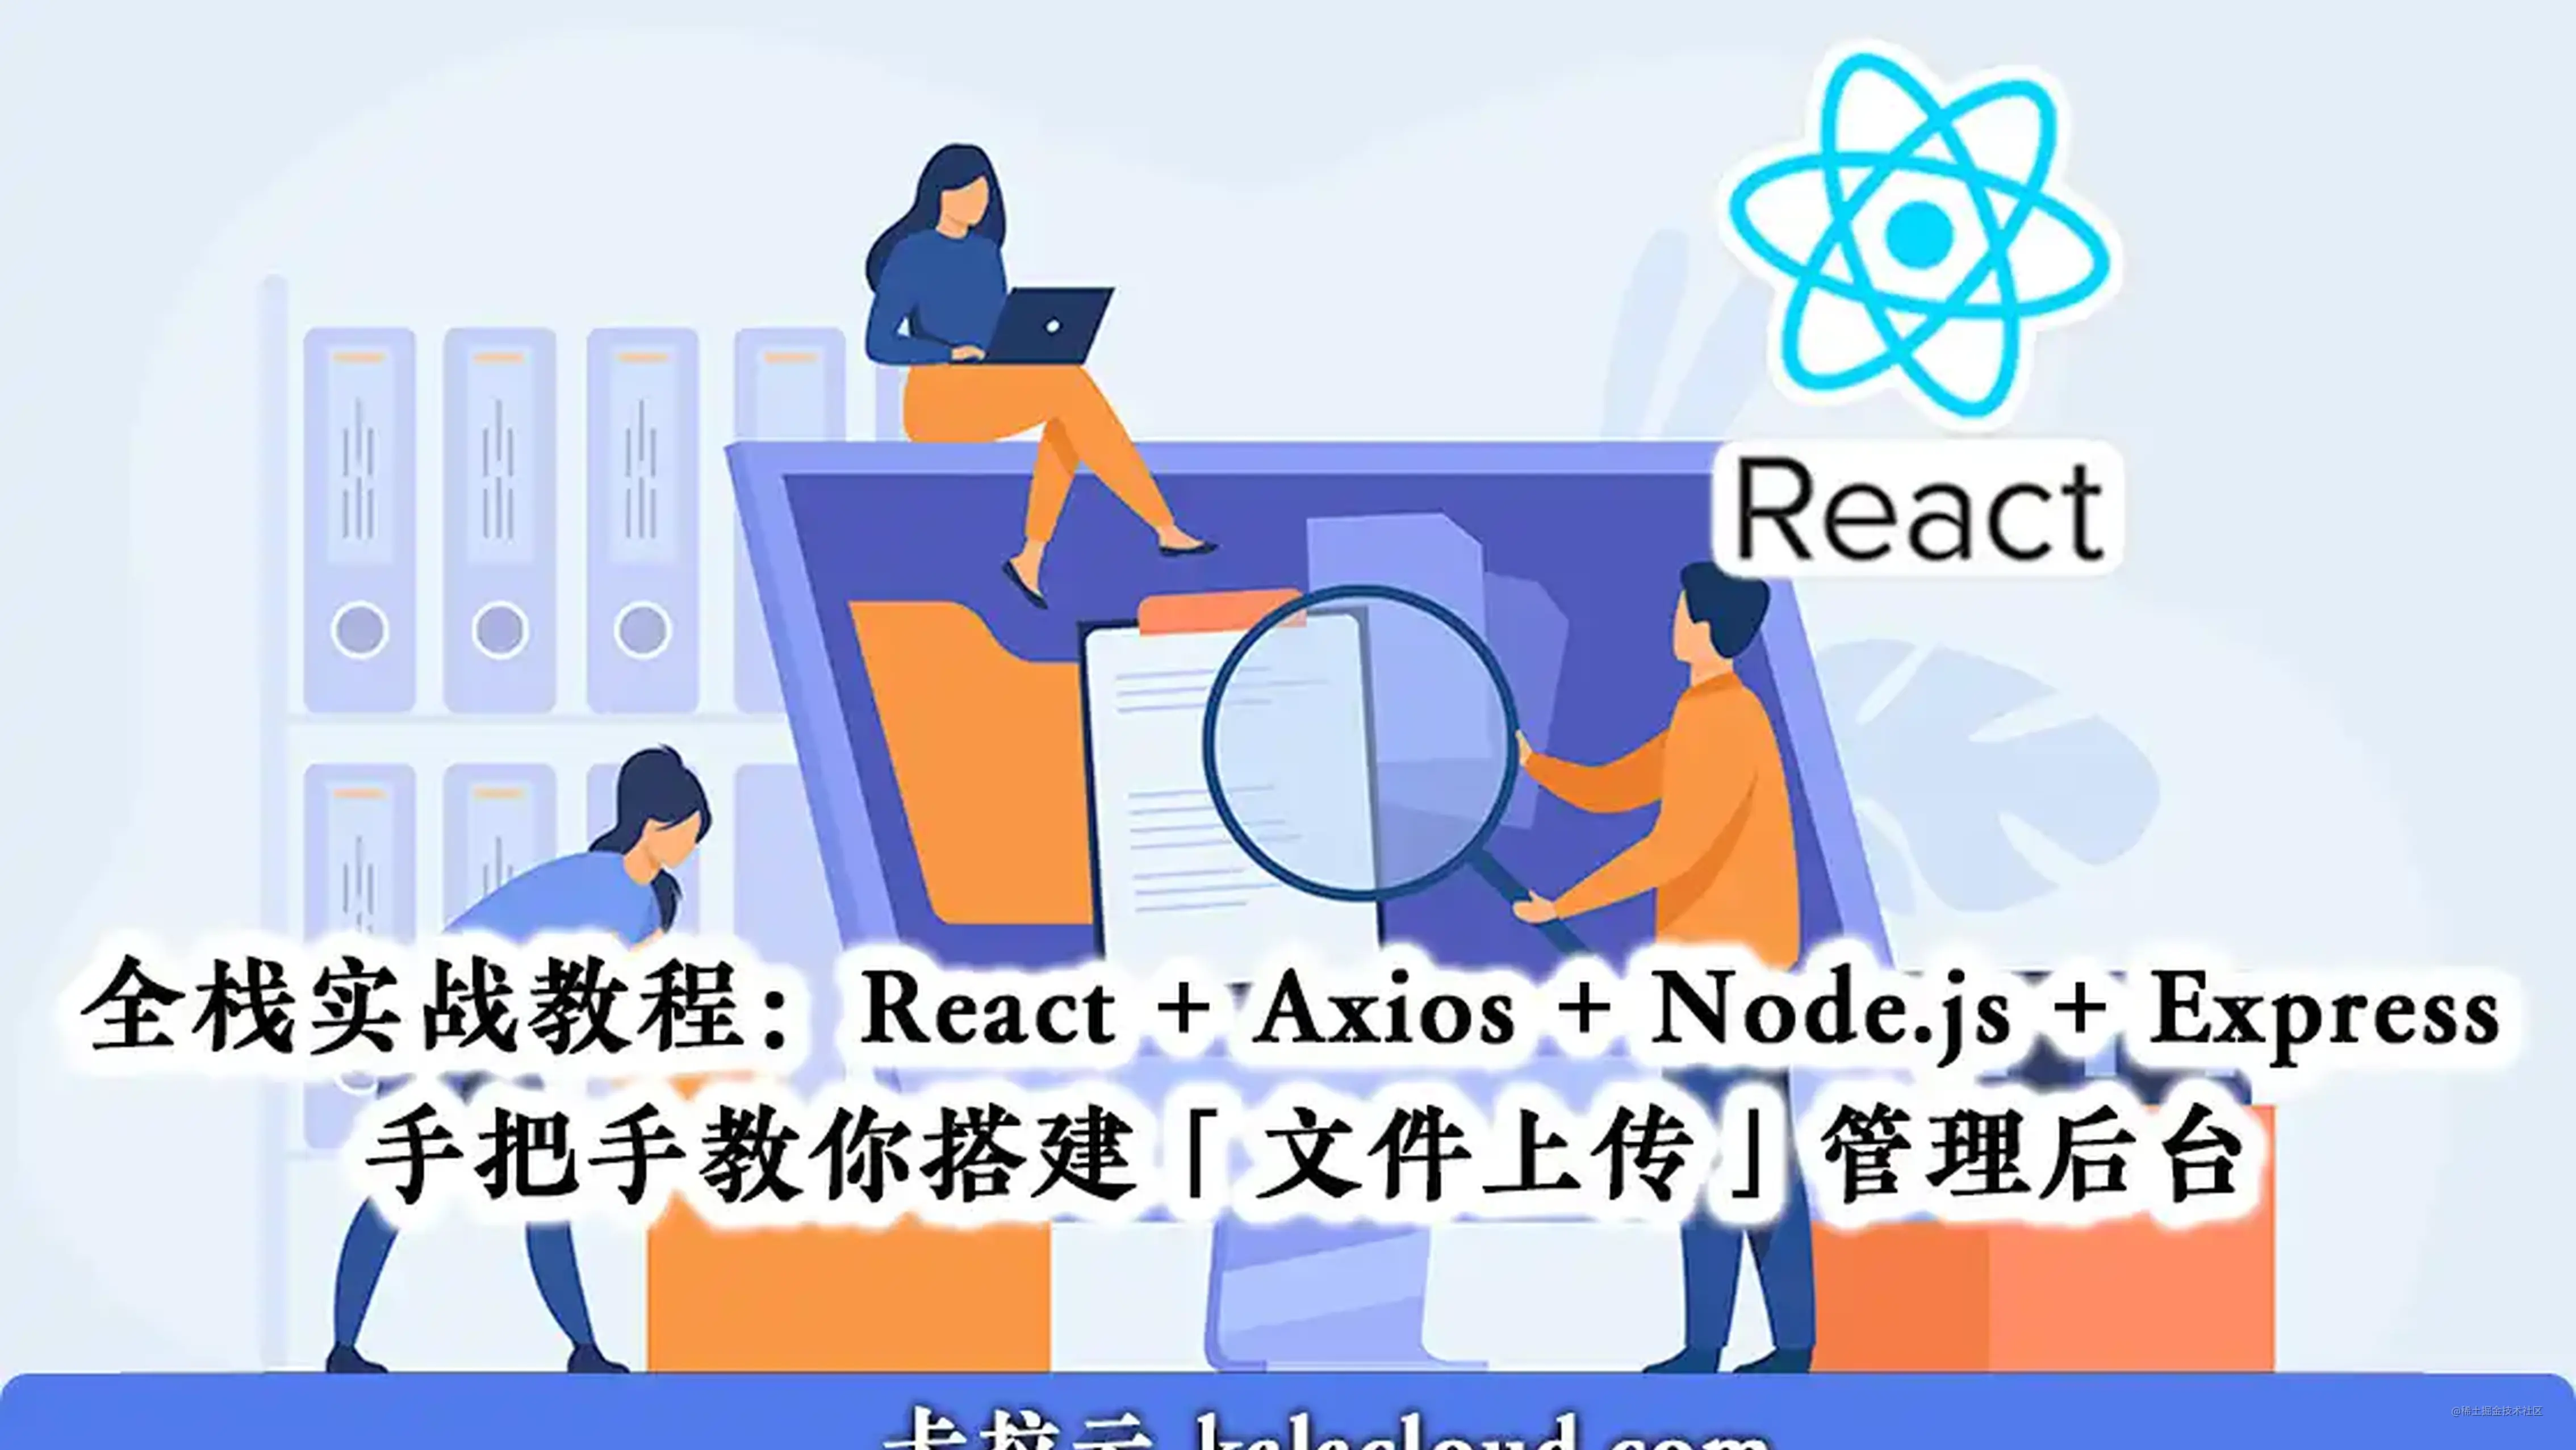 React + Node.js 全栈实战教程 - 手把手教你搭建「文件上传」管理后台